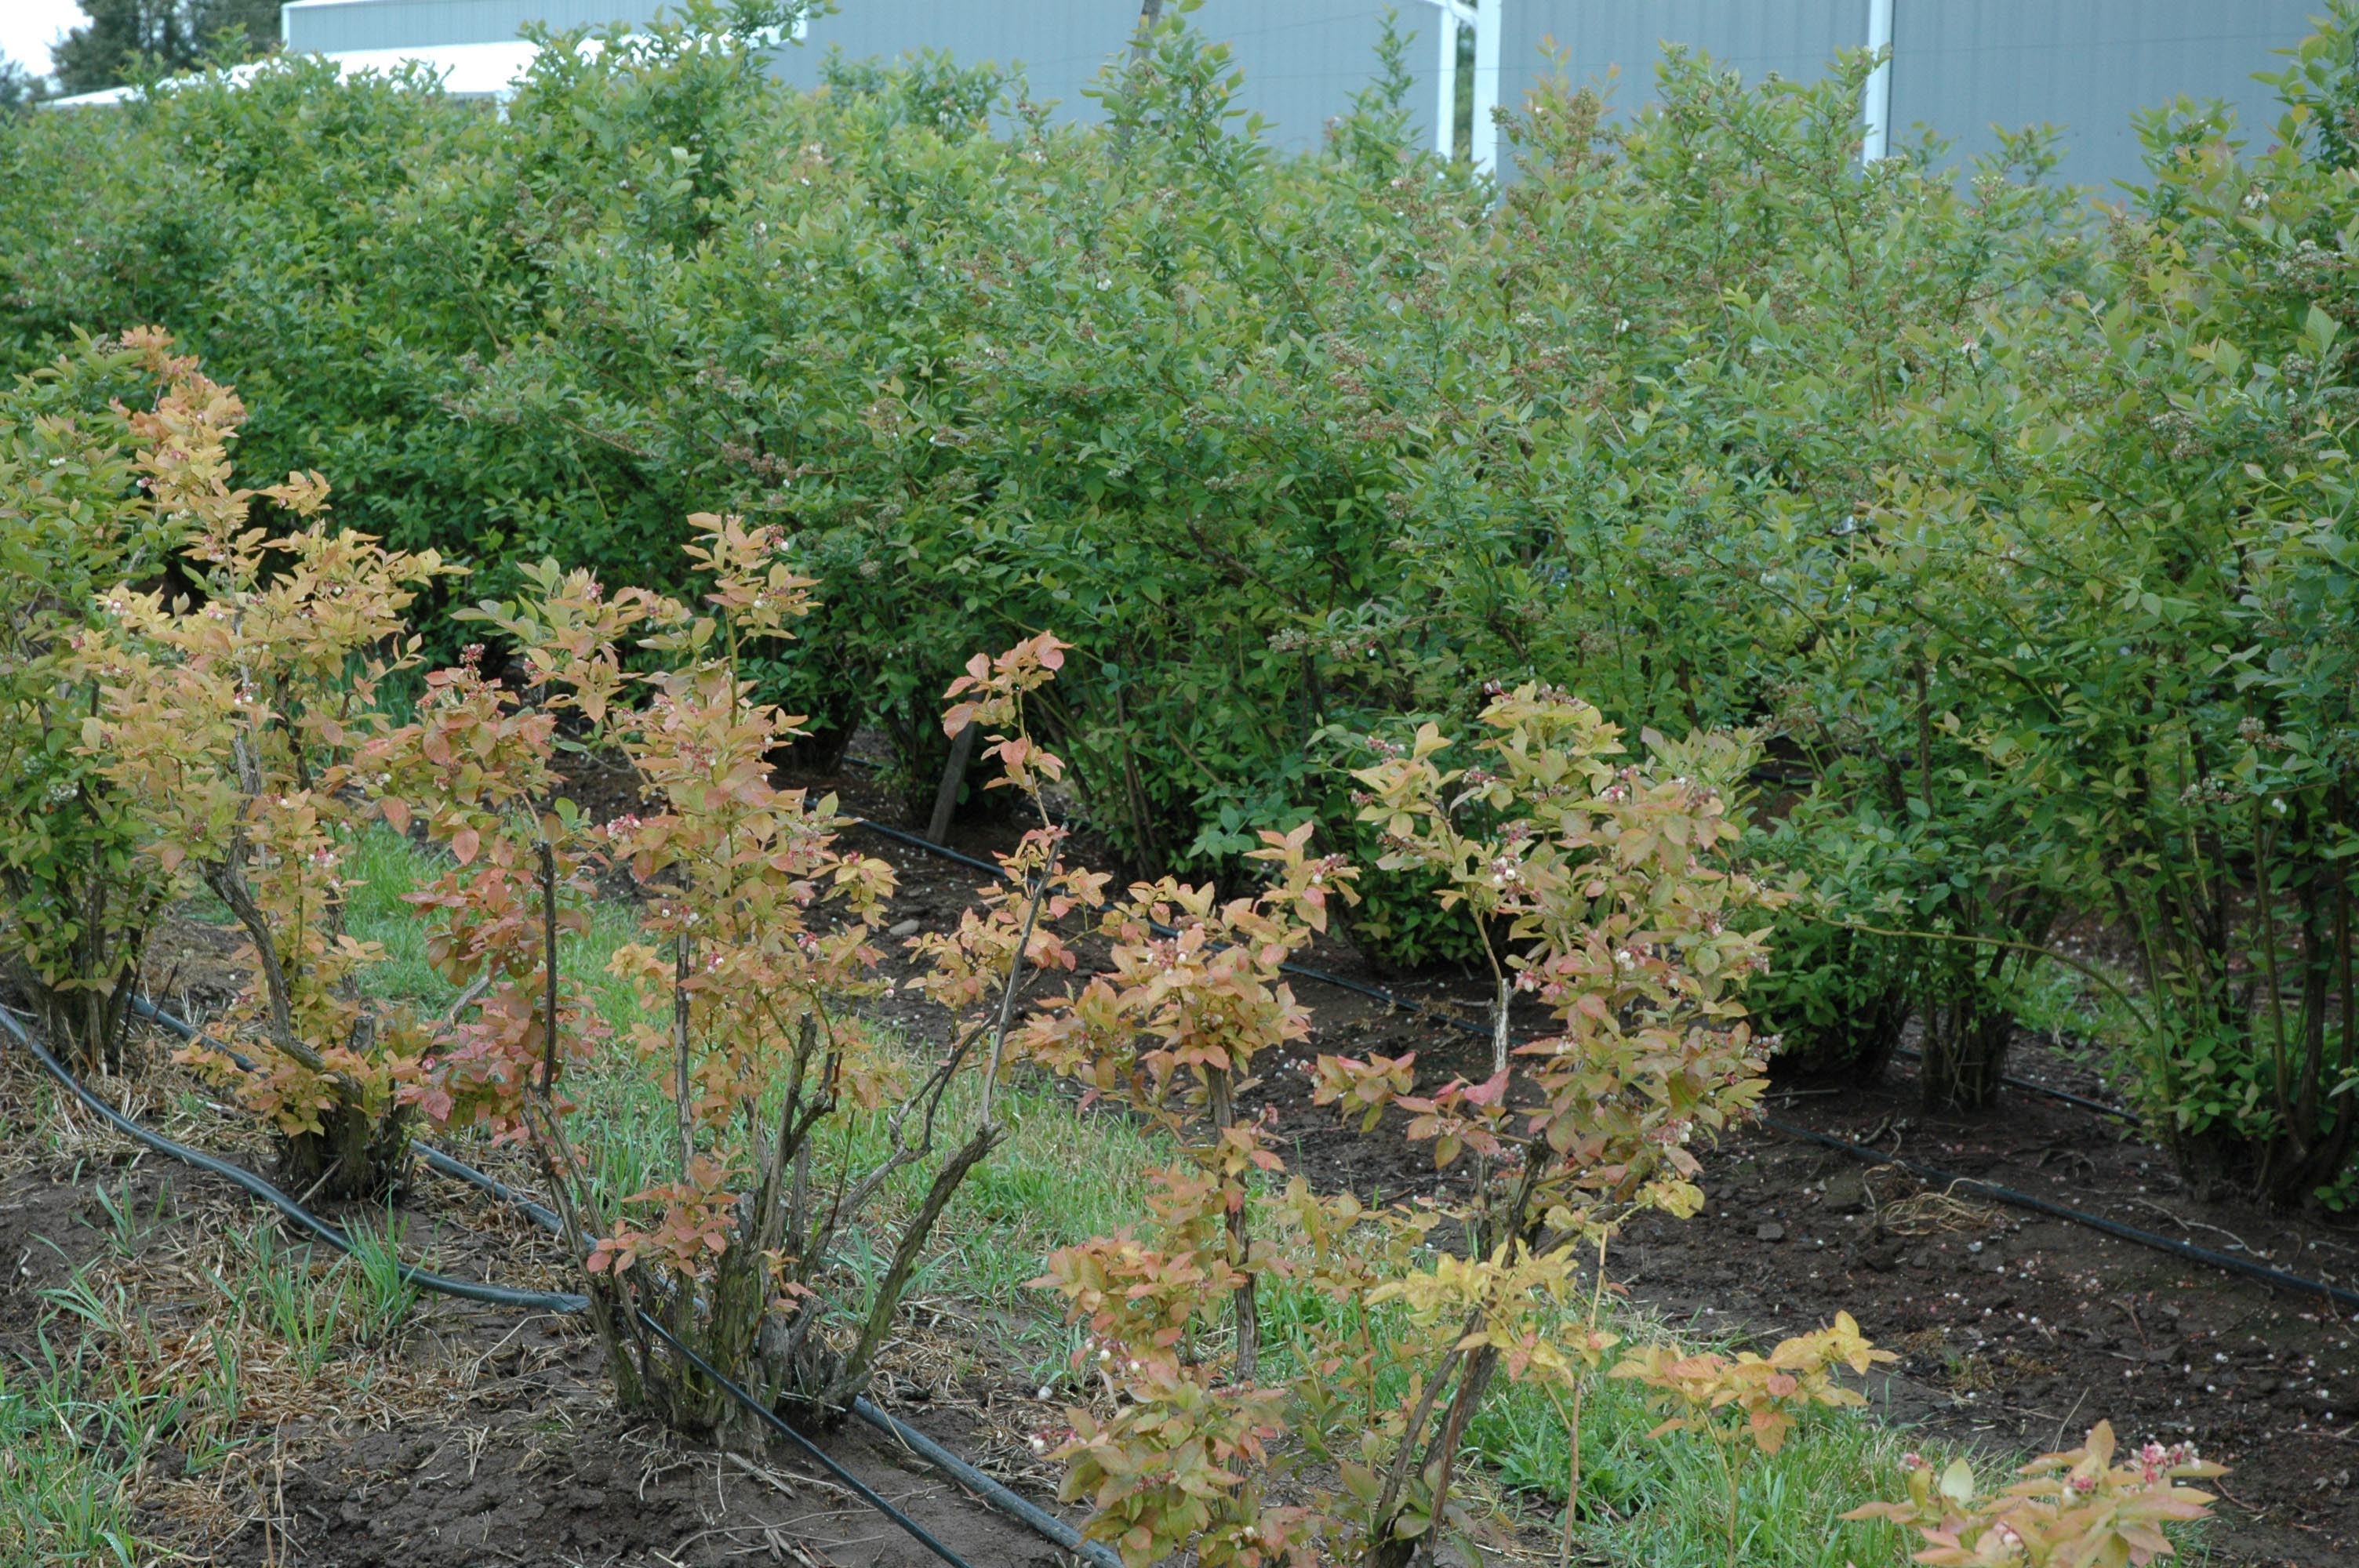 Plants de bleuet en corymbe rabougris et de couleur brune devant des plants verts, luxuriants et de pleine taille